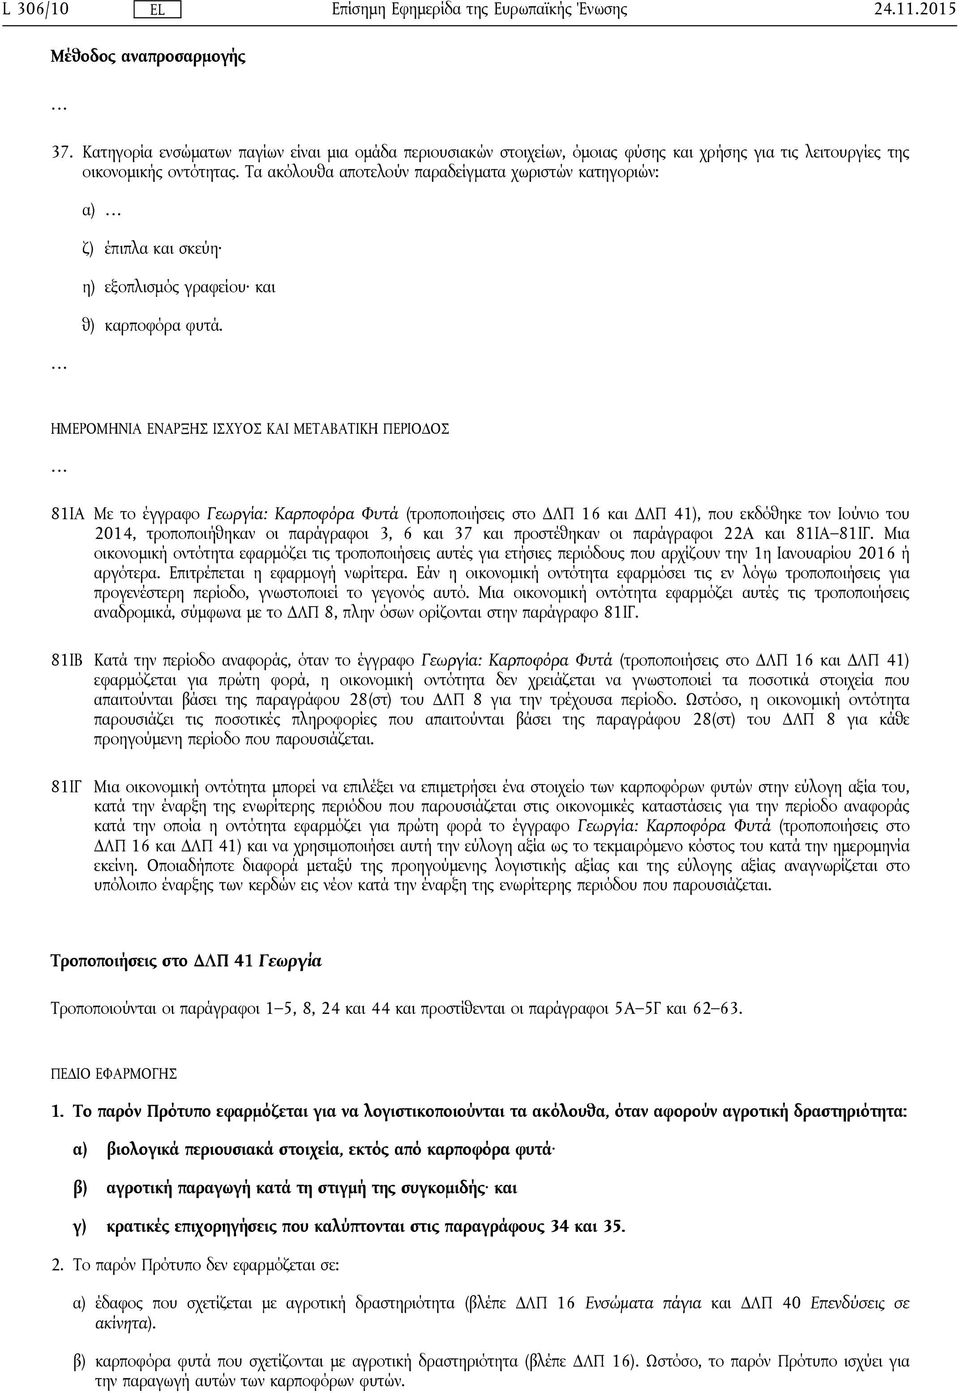 ΗΜΕΡΟΜΗΝΙΑ ΕΝΑΡΞΗΣ ΙΣΧΥΟΣ ΚΑΙ ΜΕΤΑΒΑΤΙΚΗ ΠΕΡΙΟΔΟΣ 81ΙΑ Με το έγγραφο Γεωργία: Καρποφόρα Φυτά (τροποποιήσεις στο ΔΛΠ 16 και ΔΛΠ 41), που εκδόθηκε τον Ιούνιο του 2014, τροποποιήθηκαν οι παράγραφοι 3, 6